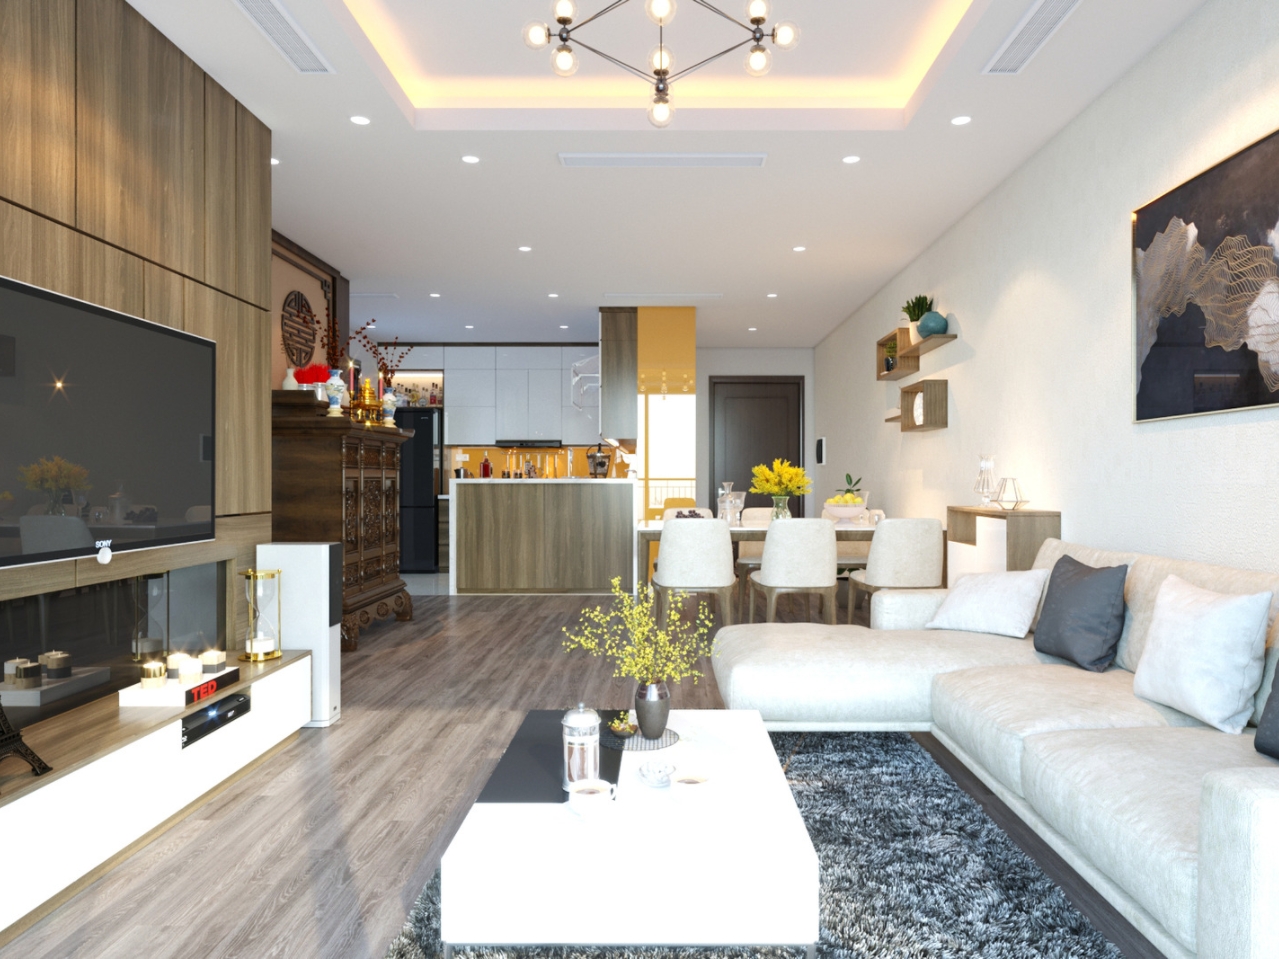 Phòng khách chung cư thiết kế hoà quyện màu sắc nổi bật và ấn tượng